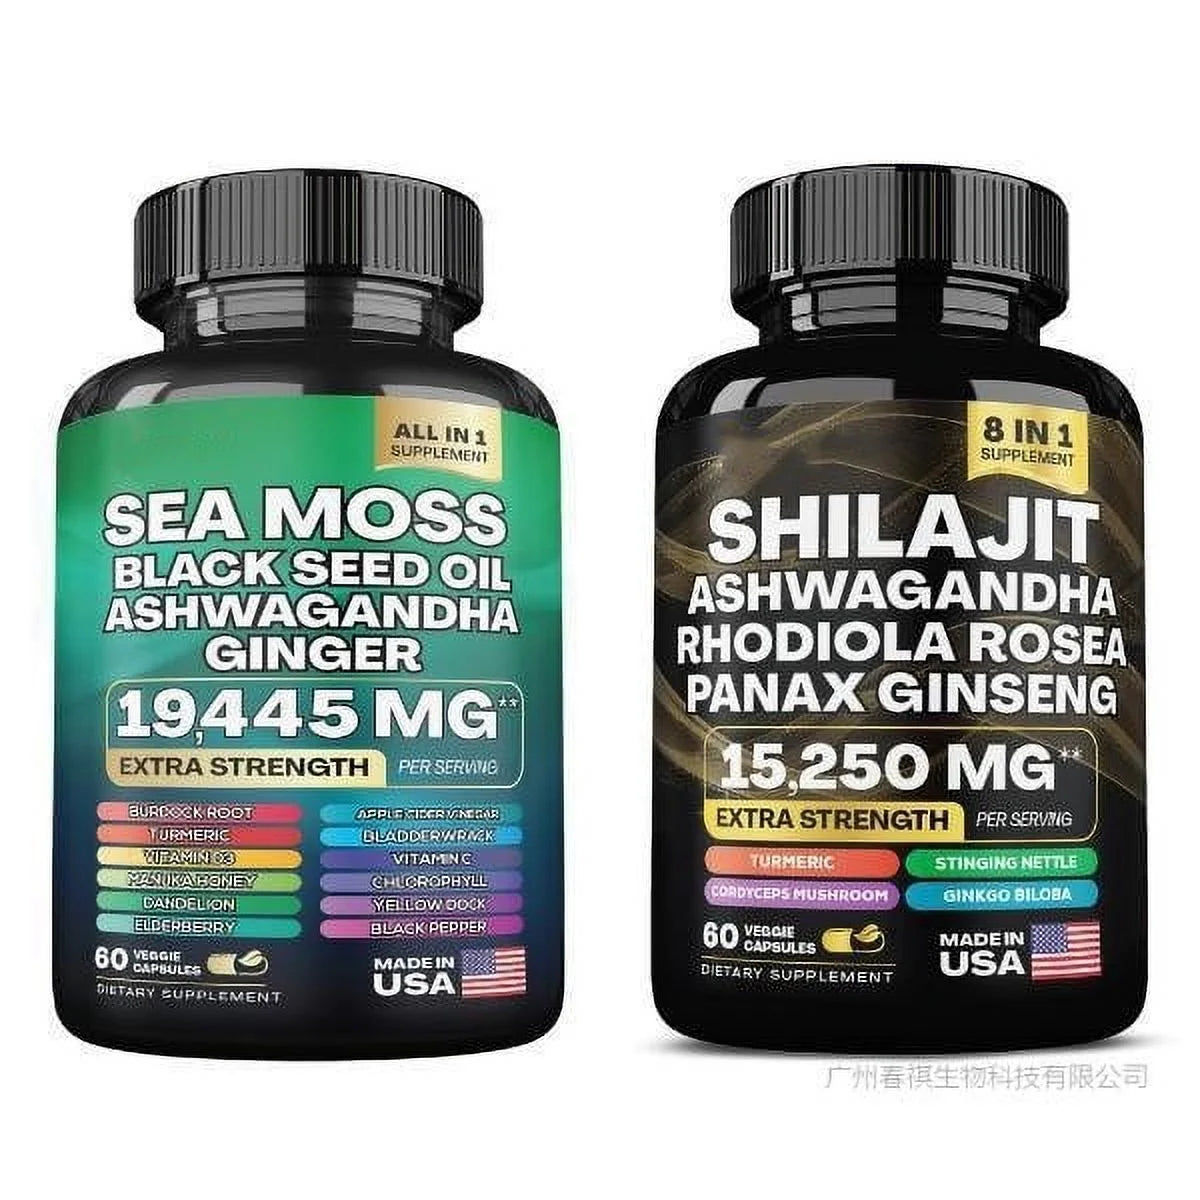 Sea Moss 7000Mg, Black Seed Oil 4000Mg, Ashwagandha 2000Mg, Ginger & Shilajit 9000Mg, Rhodiola Rosea 1000Mg, Panax Ginseng 1500Mg, All in 1 Supplements (1 Pack)